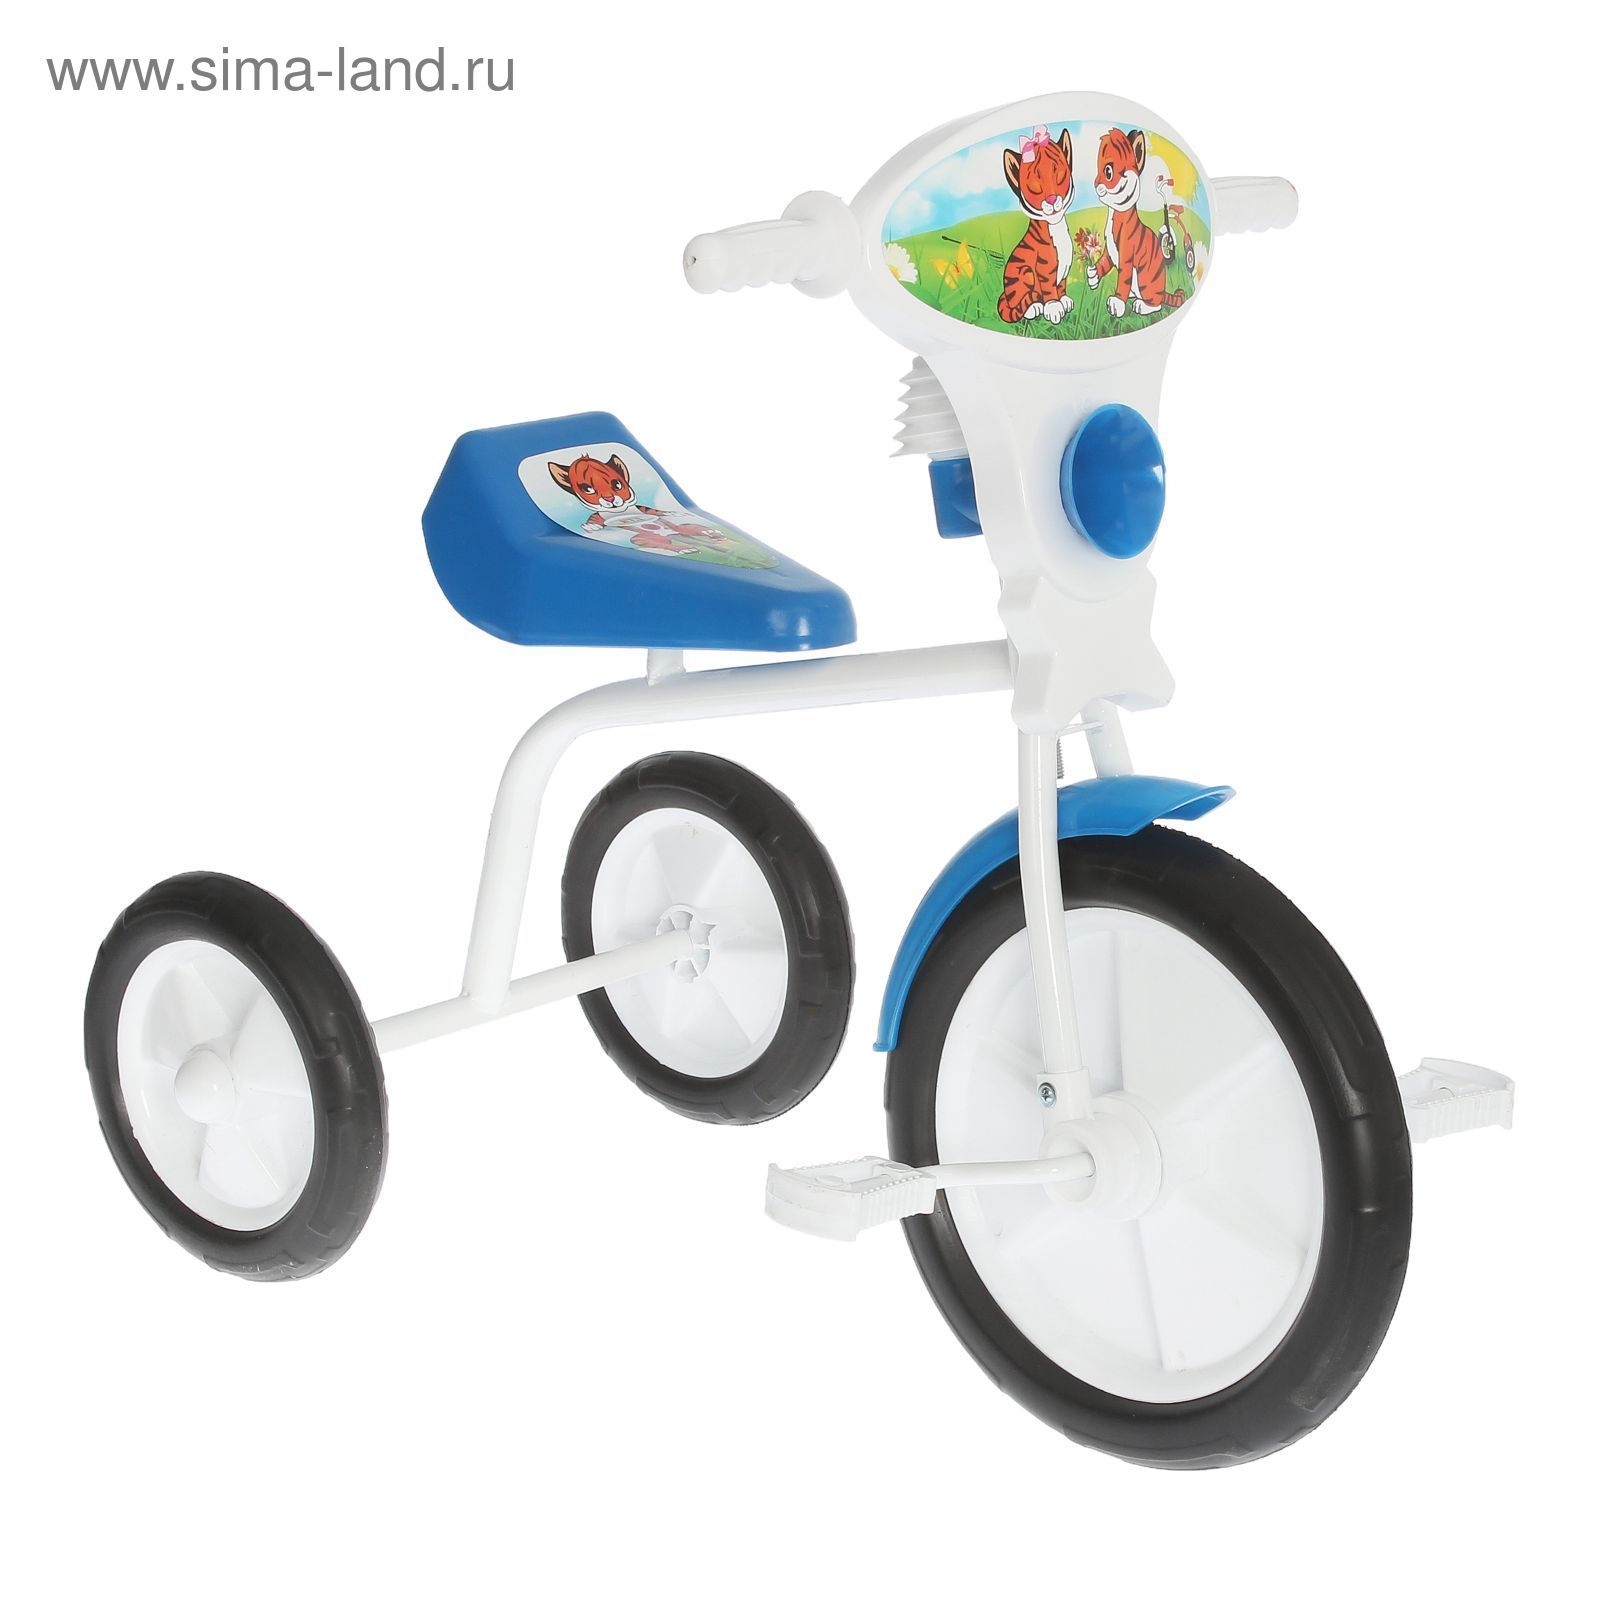 Велосипед трехколесный  "Малыш"  01П, цвет синий, фасовка: 1шт.